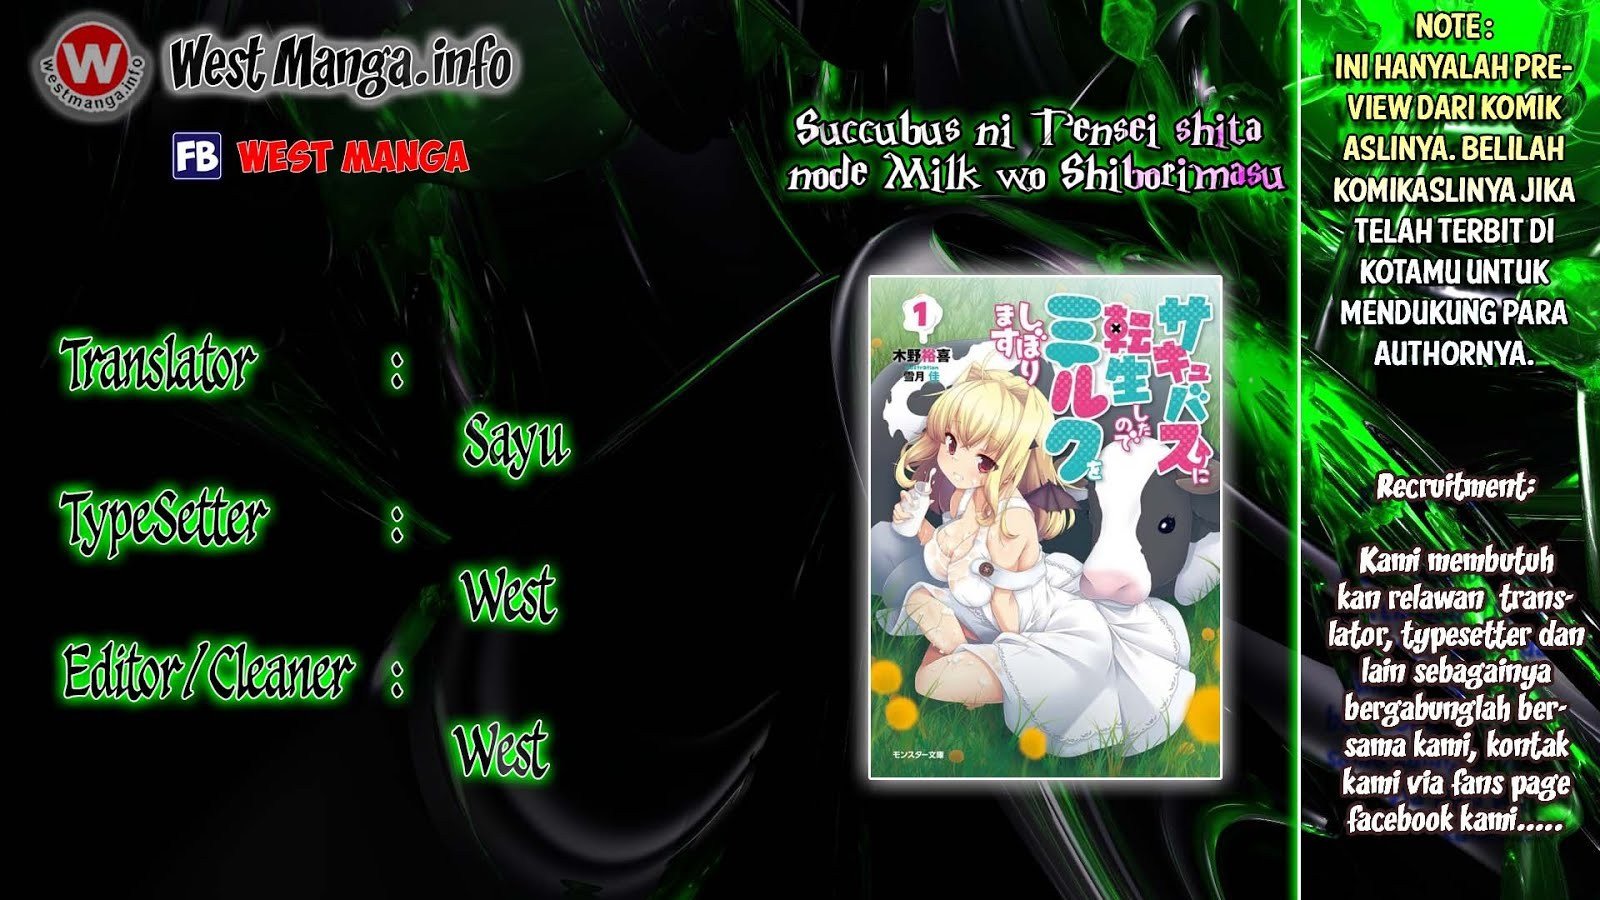 Succubus ni Tensei shita node Milk wo Shiborimasu Chapter 02